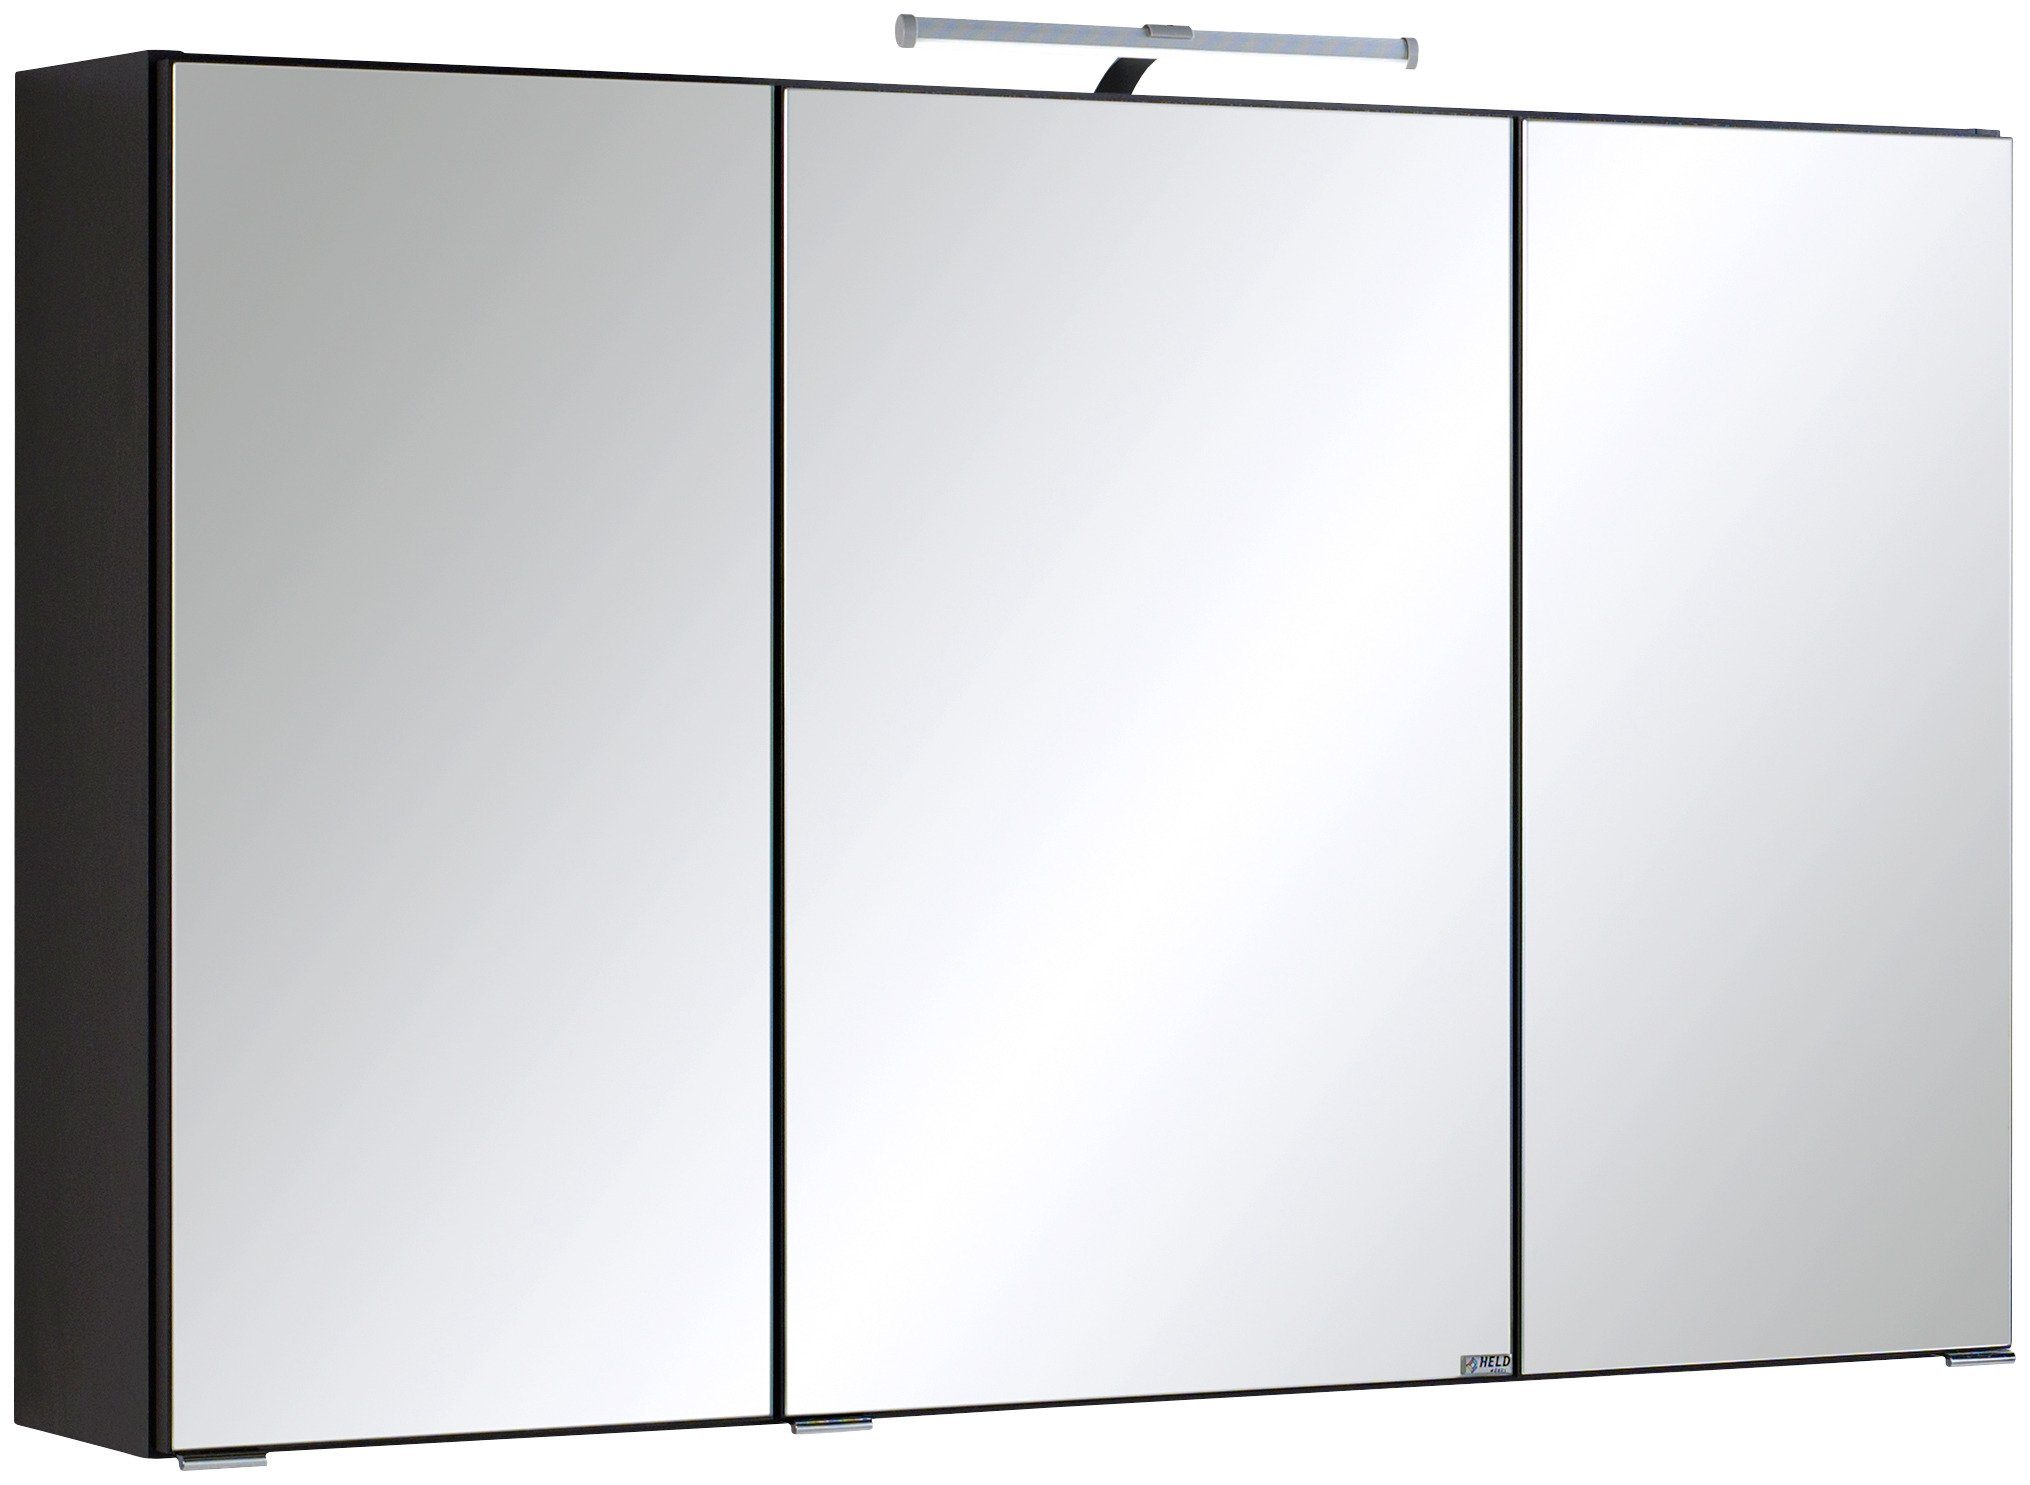 HELD MÖBEL Spiegelschrank Texas Breite 100 cm, mit LED-Aufbauleuchte anthrazit | Spiegelschränke